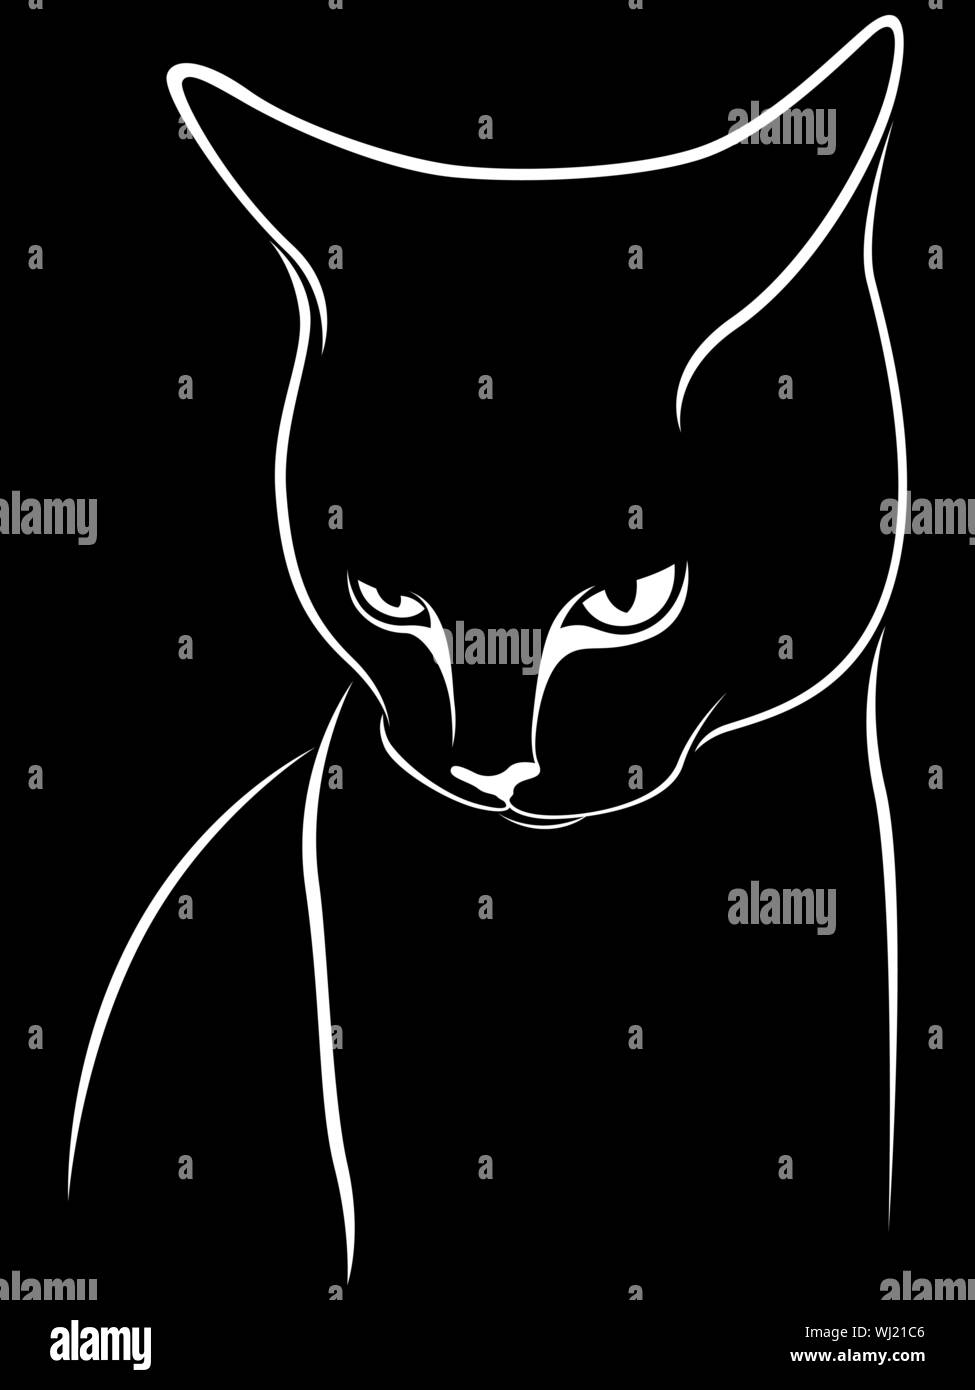 Résumé de pochoir chat, inclinant sa tête vers le bas, noir vector dessin à la main sur le fond blanc Illustration de Vecteur